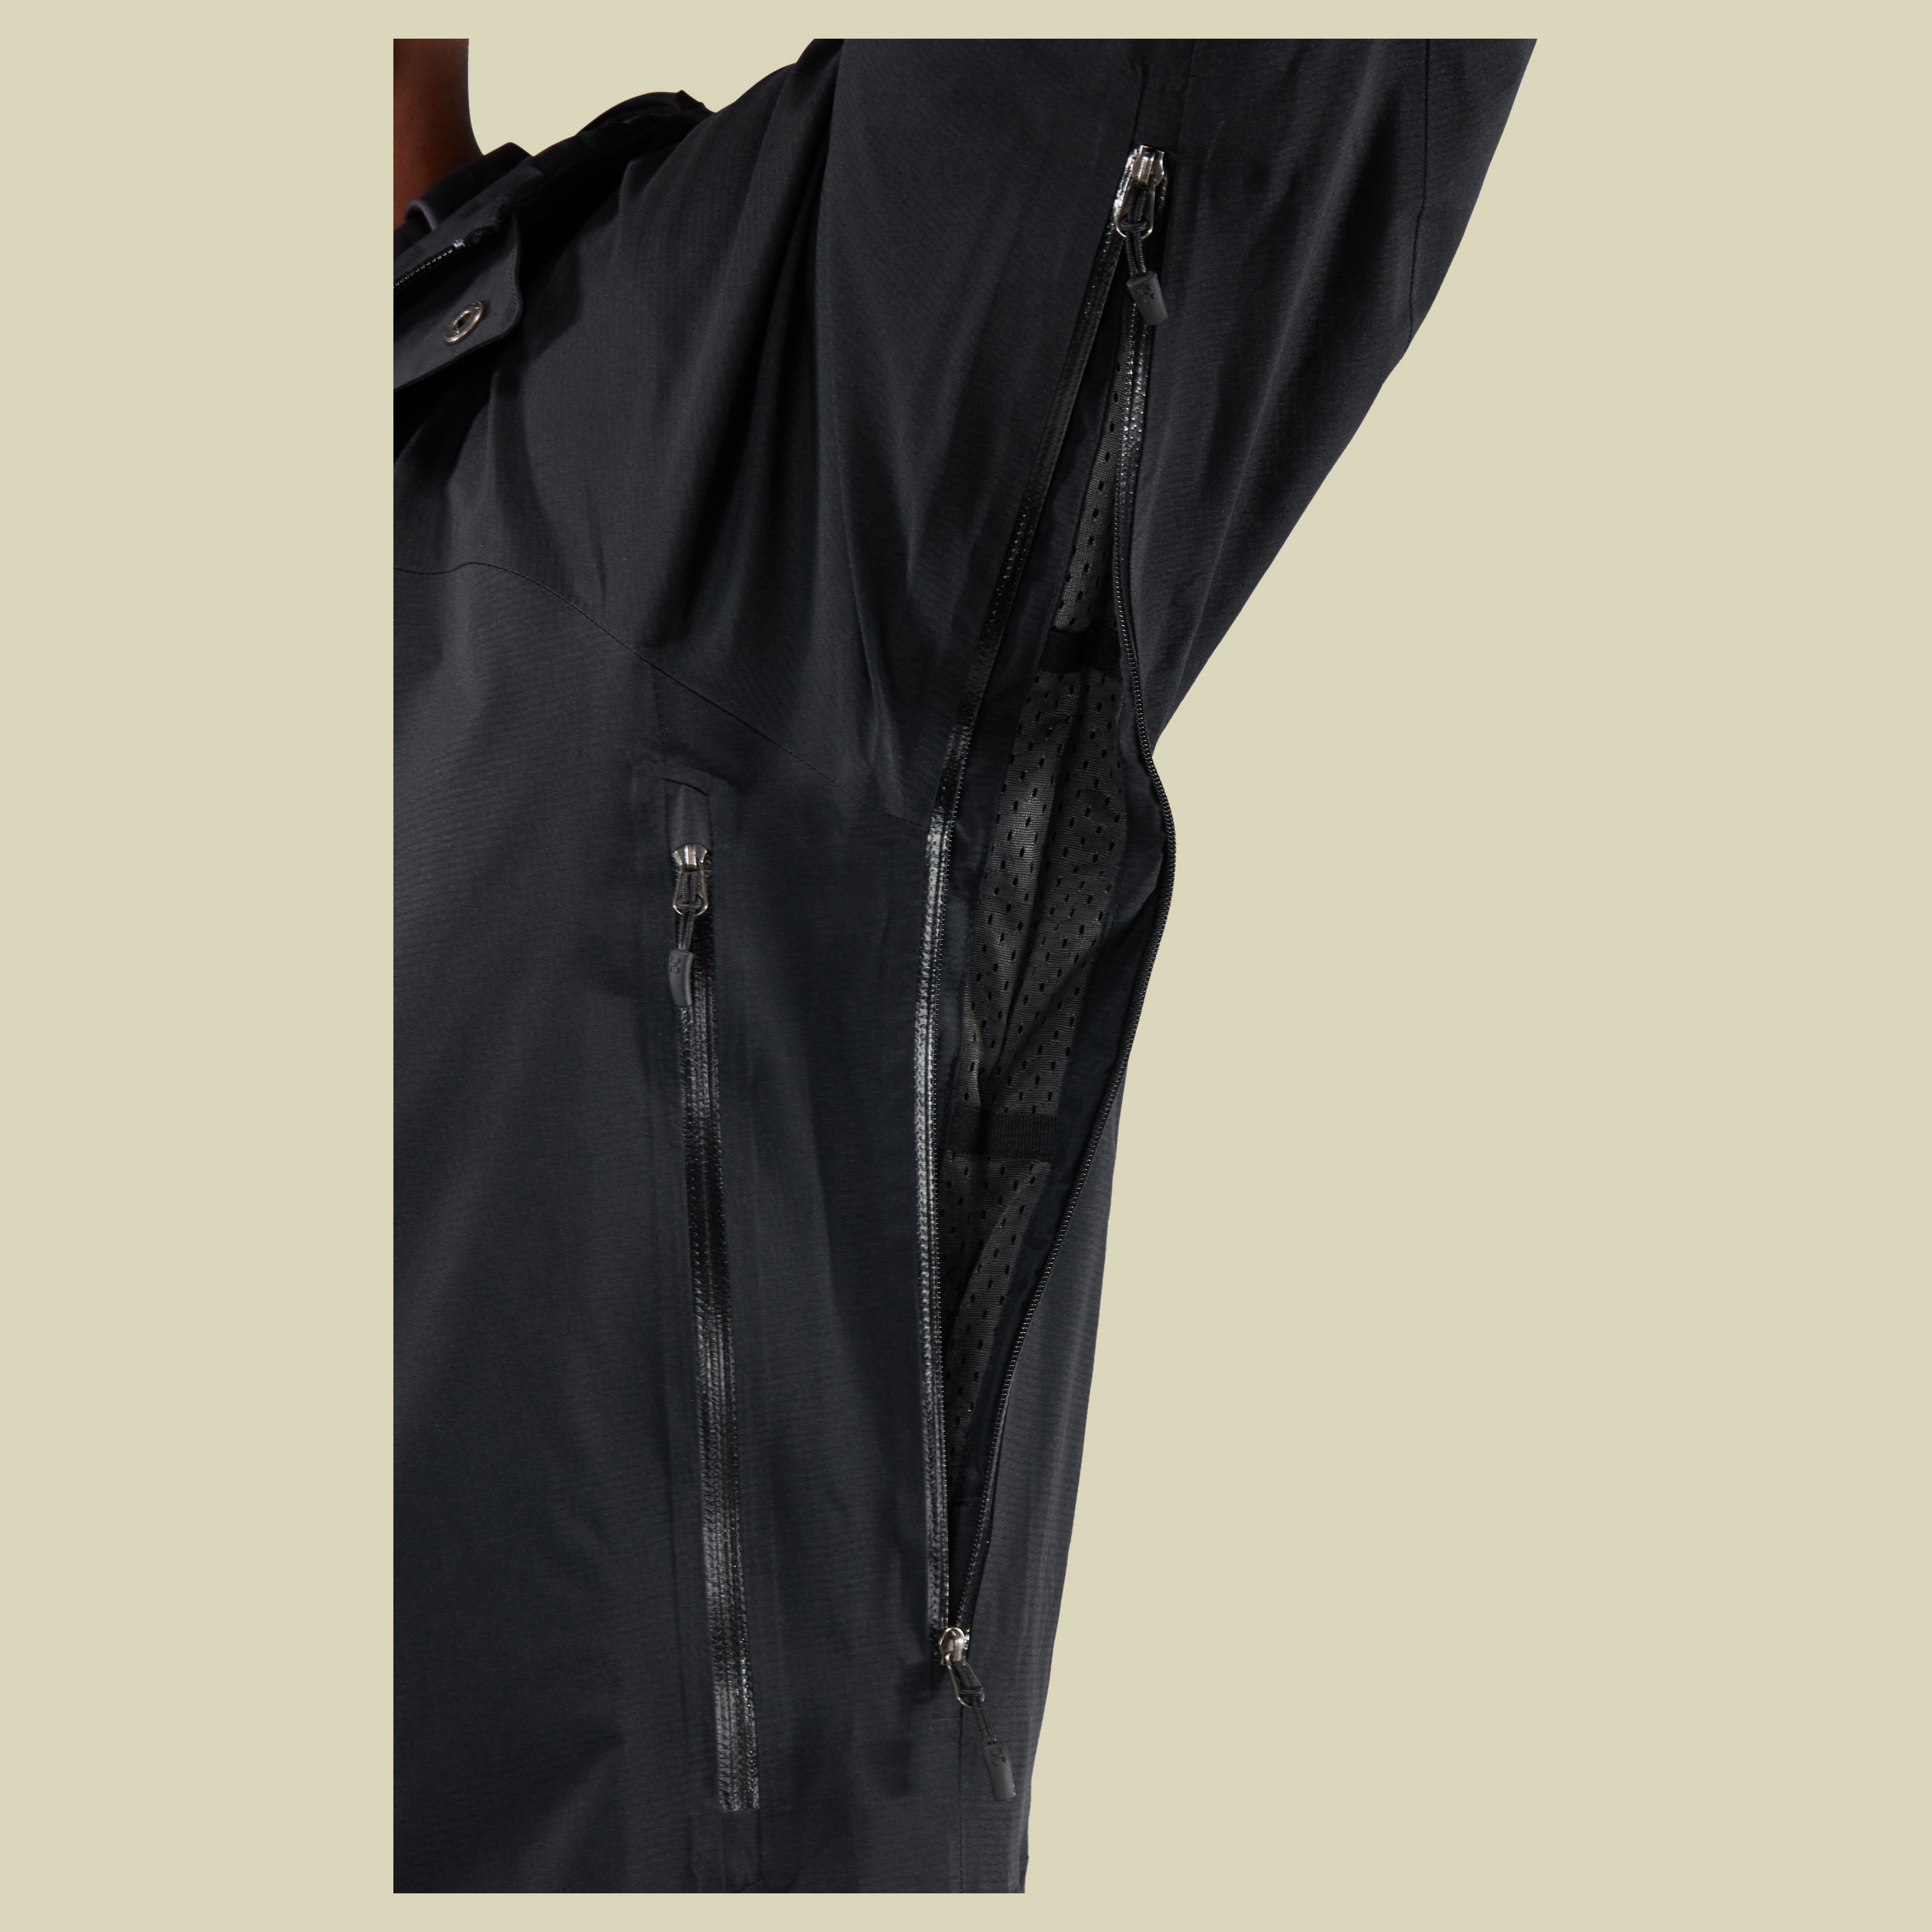 Astral Jacket Men Größe XL Farbe true black